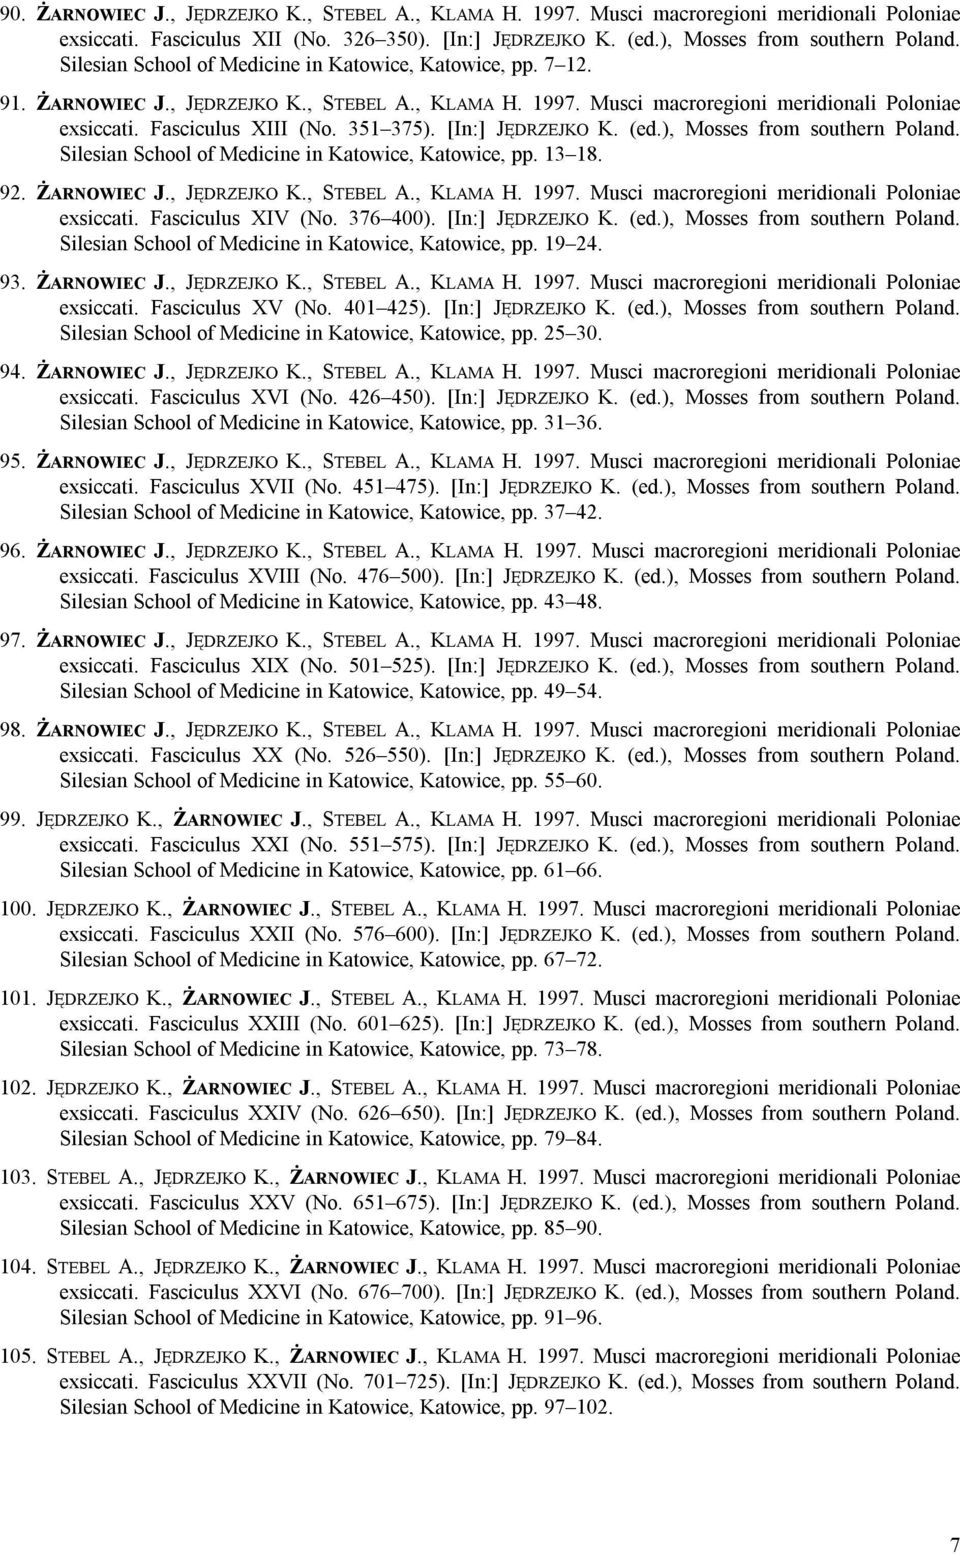 [In:] JĘDRZEJKO K. (ed.), Mosses from southern Poland. Silesian School of Medicine in Katowice, Katowice, pp. 13 18. 92. ŻARNOWIEC J., JĘDRZEJKO K., STEBEL A., KLAMA H. 1997.